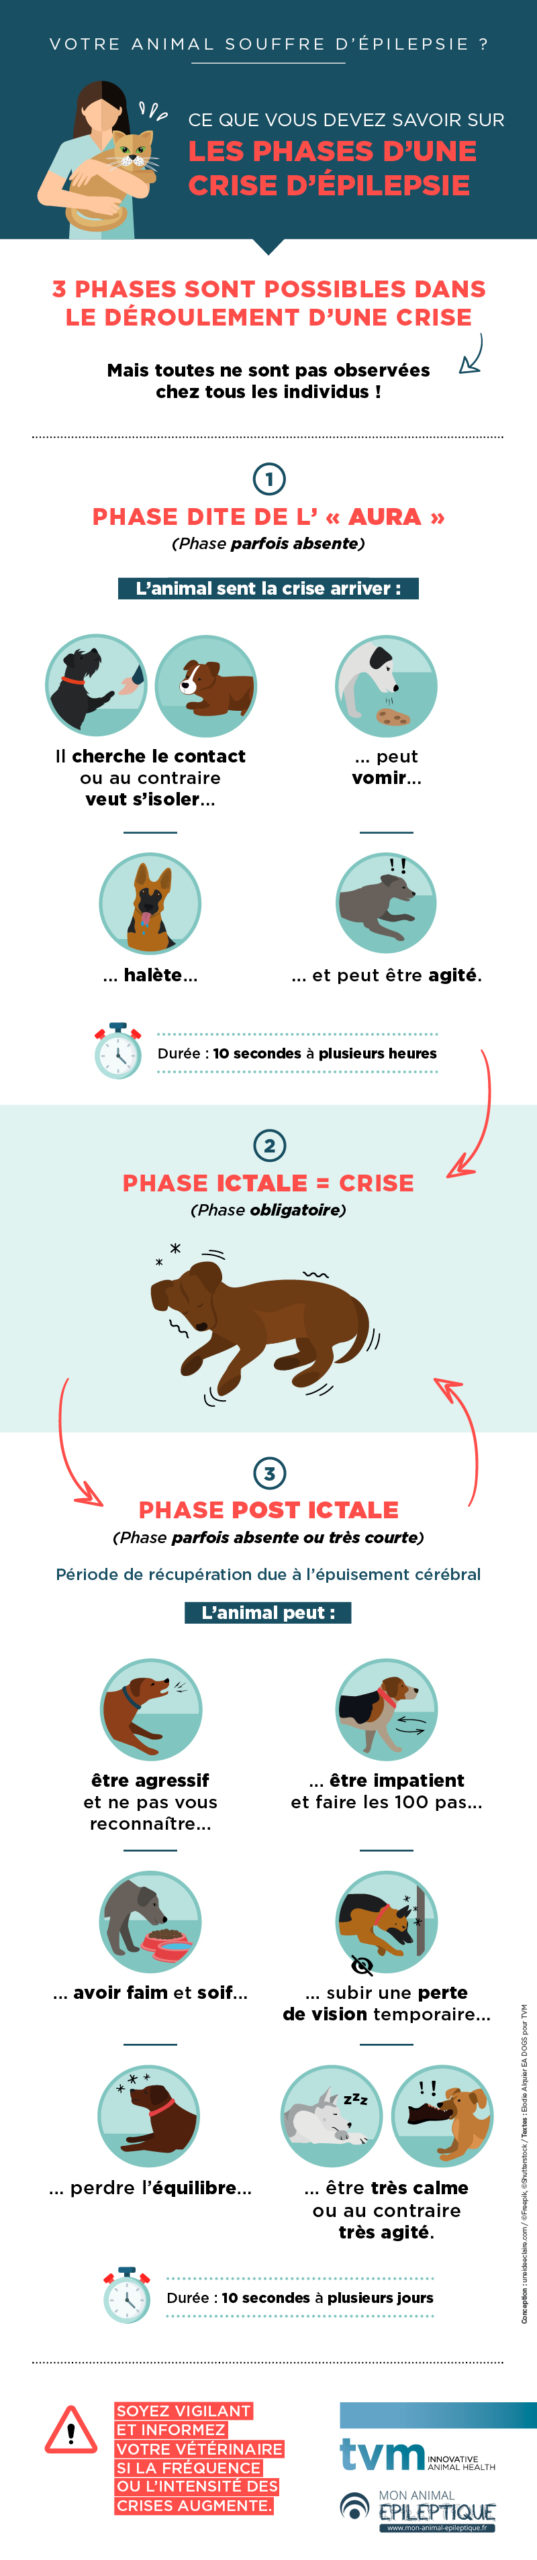 infographie sur les différentes phases d'une crise d'épilepsie : phase d'aura, phase ictale, phase post-ictale